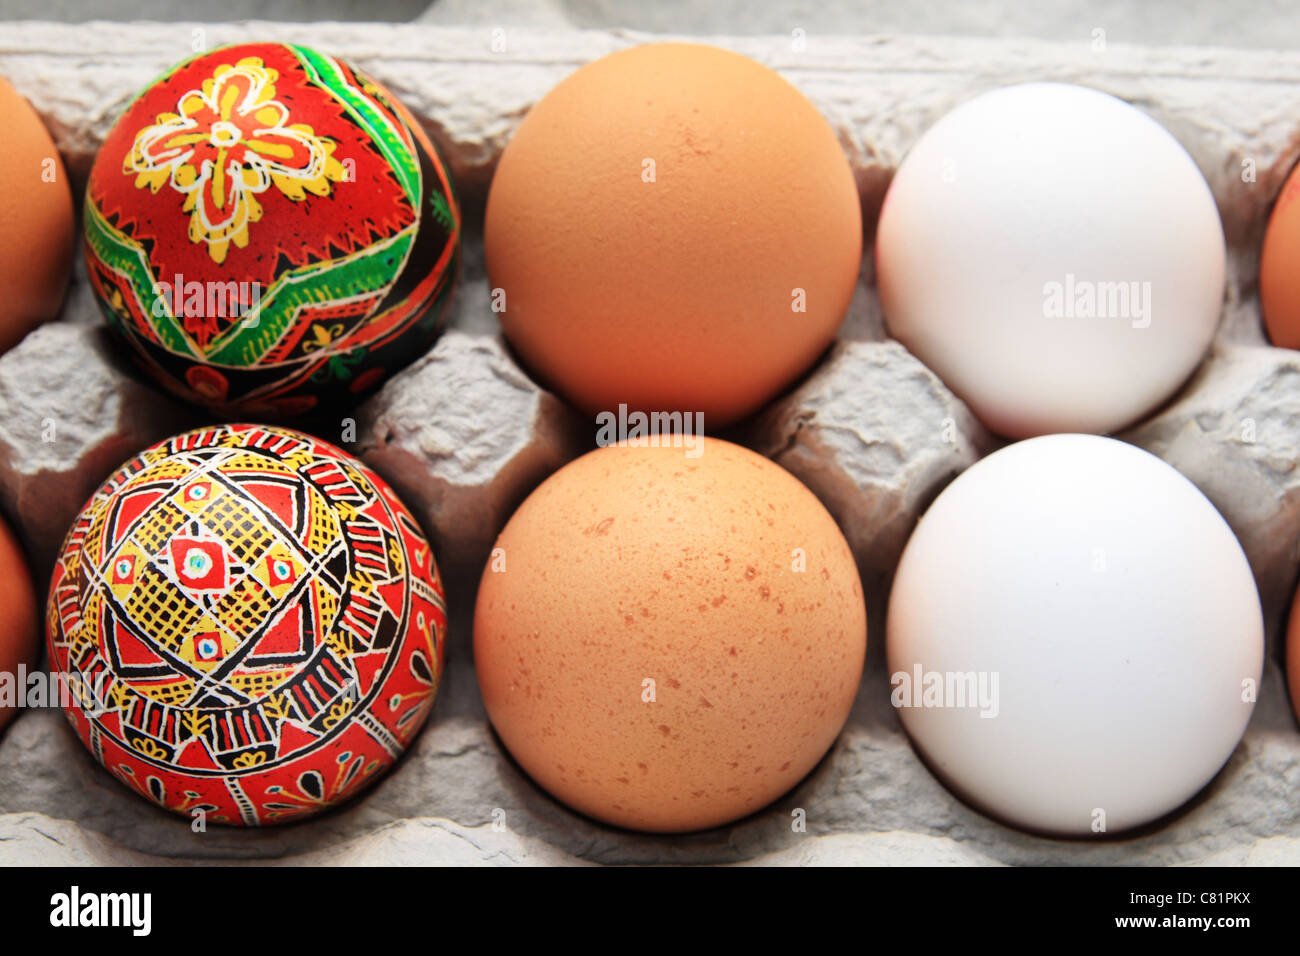 6 Eiern in einem Karton, inklusive 2 weiß, 2 braune und 2 rote Pysanka-Ostereier Stockfoto